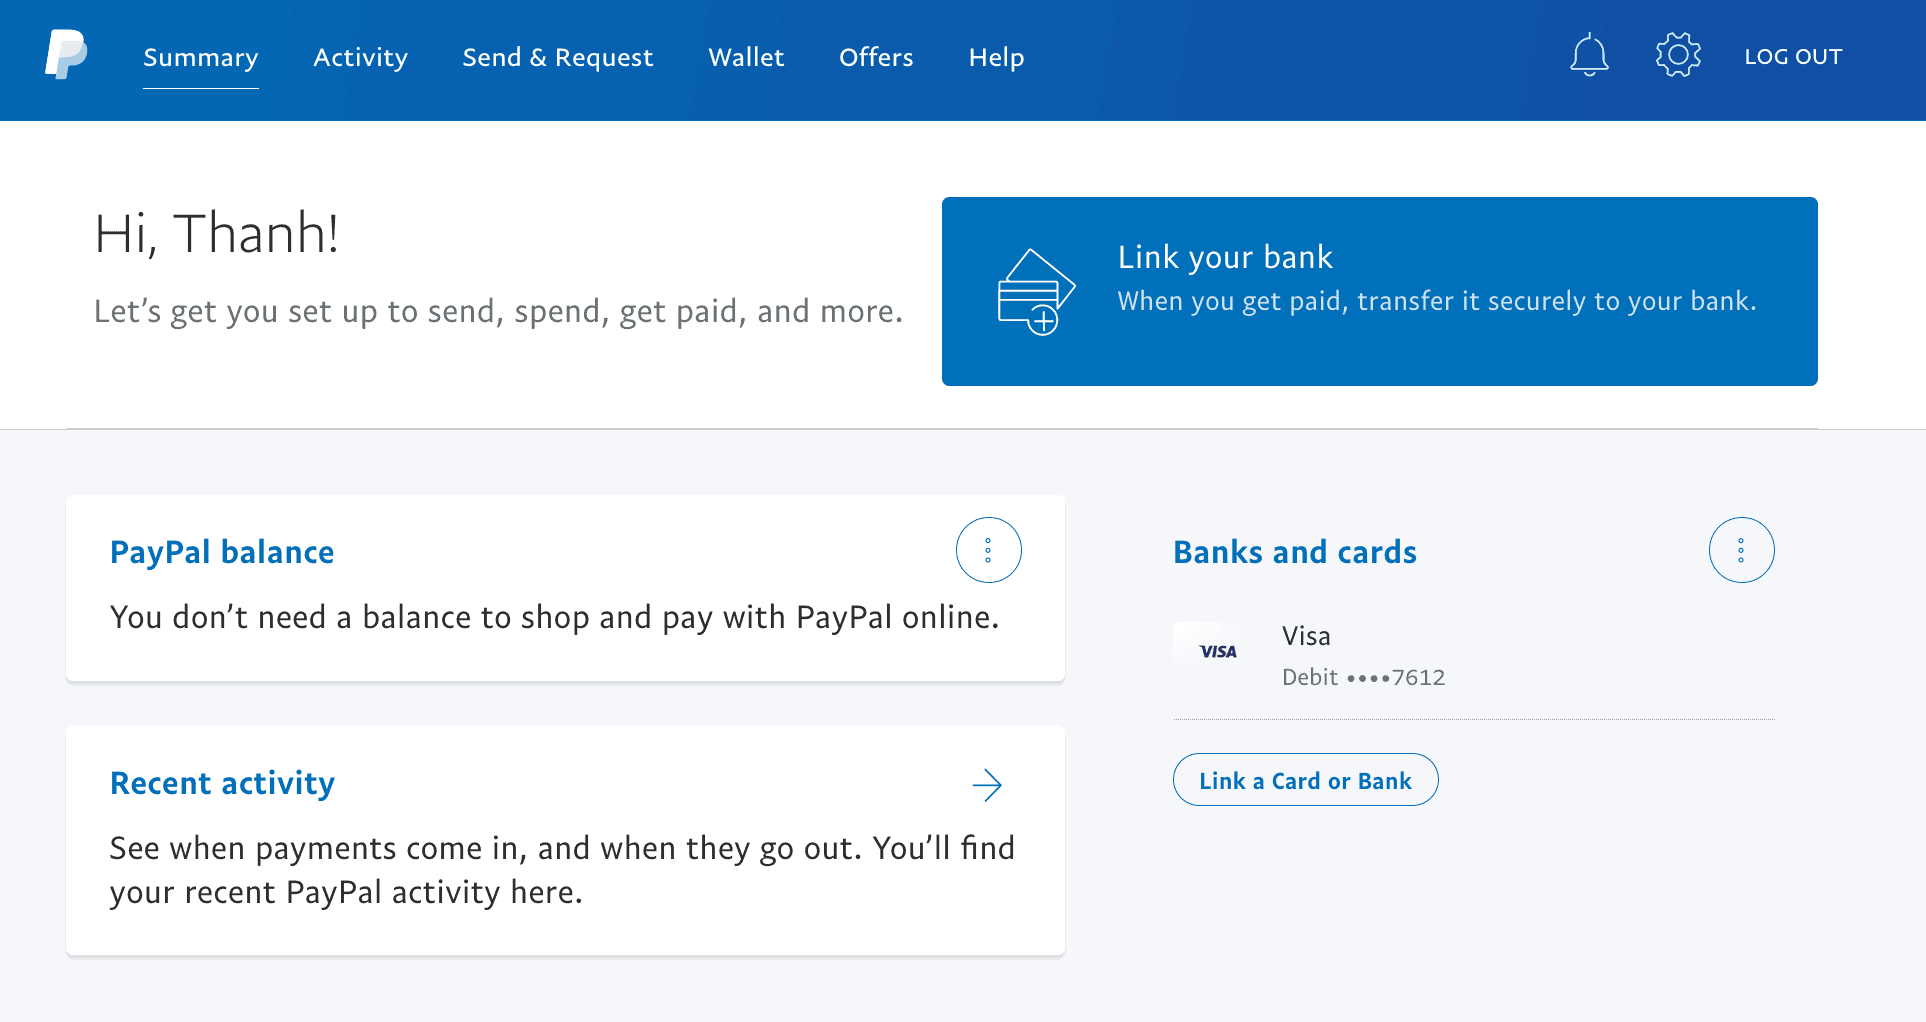 Liên kết tài khoản PayPal với thẻ ngân hàng